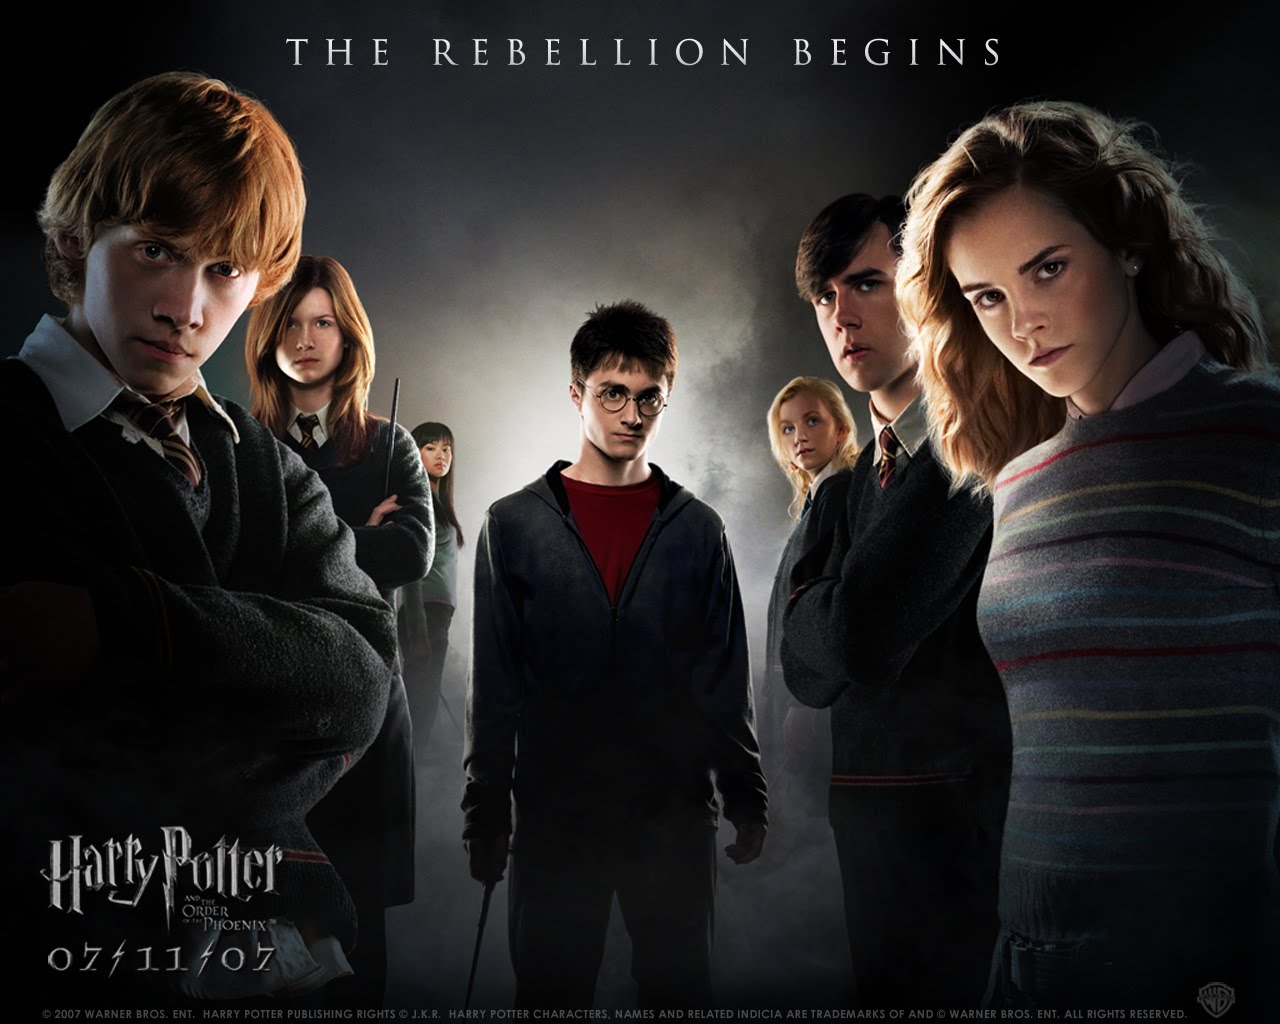  fotos vdeos cenrios para MSN e mais wallpapers Harry Potter 1280x1024